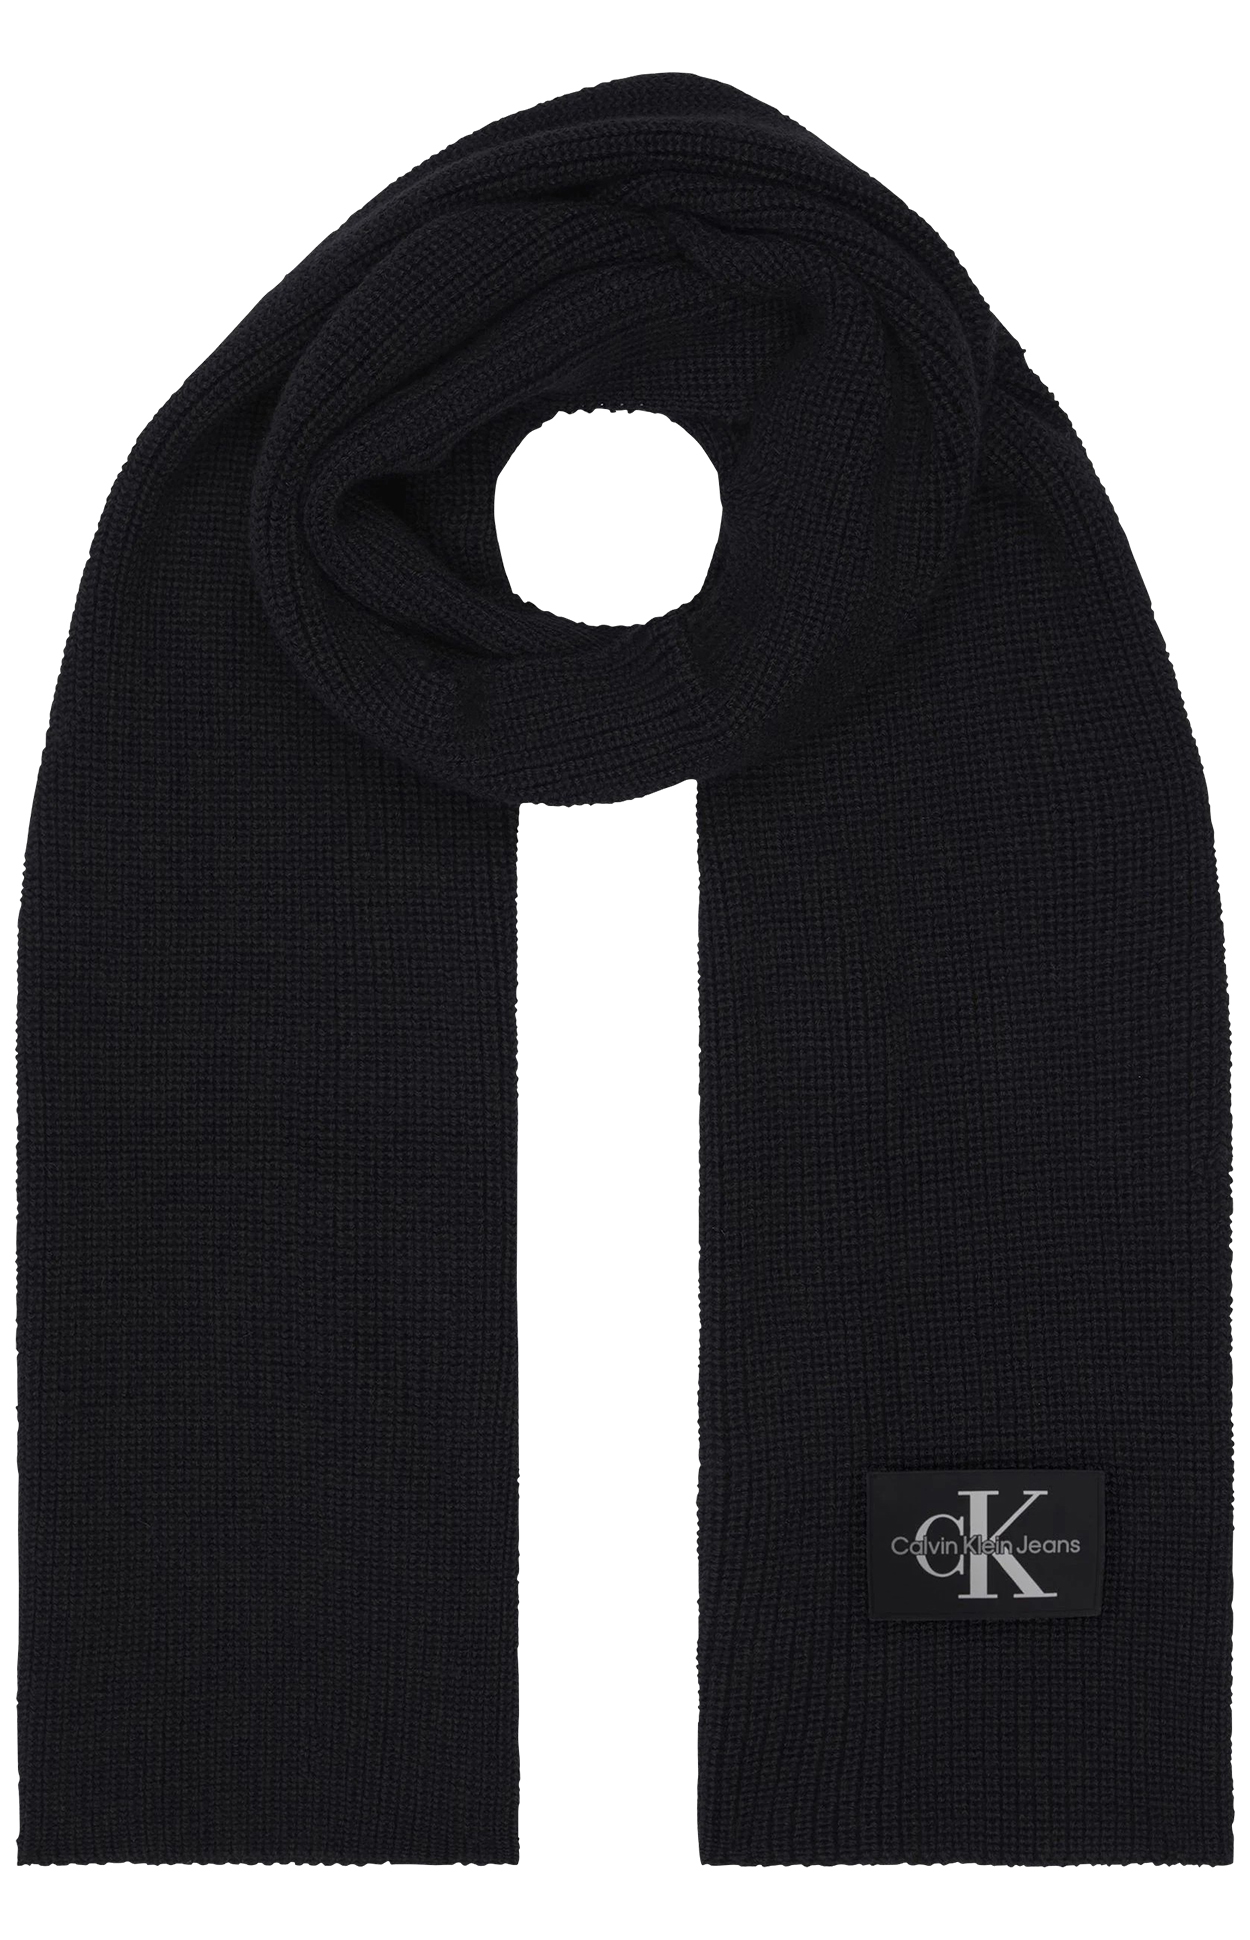 Echarpe Calvin Klein laine noire